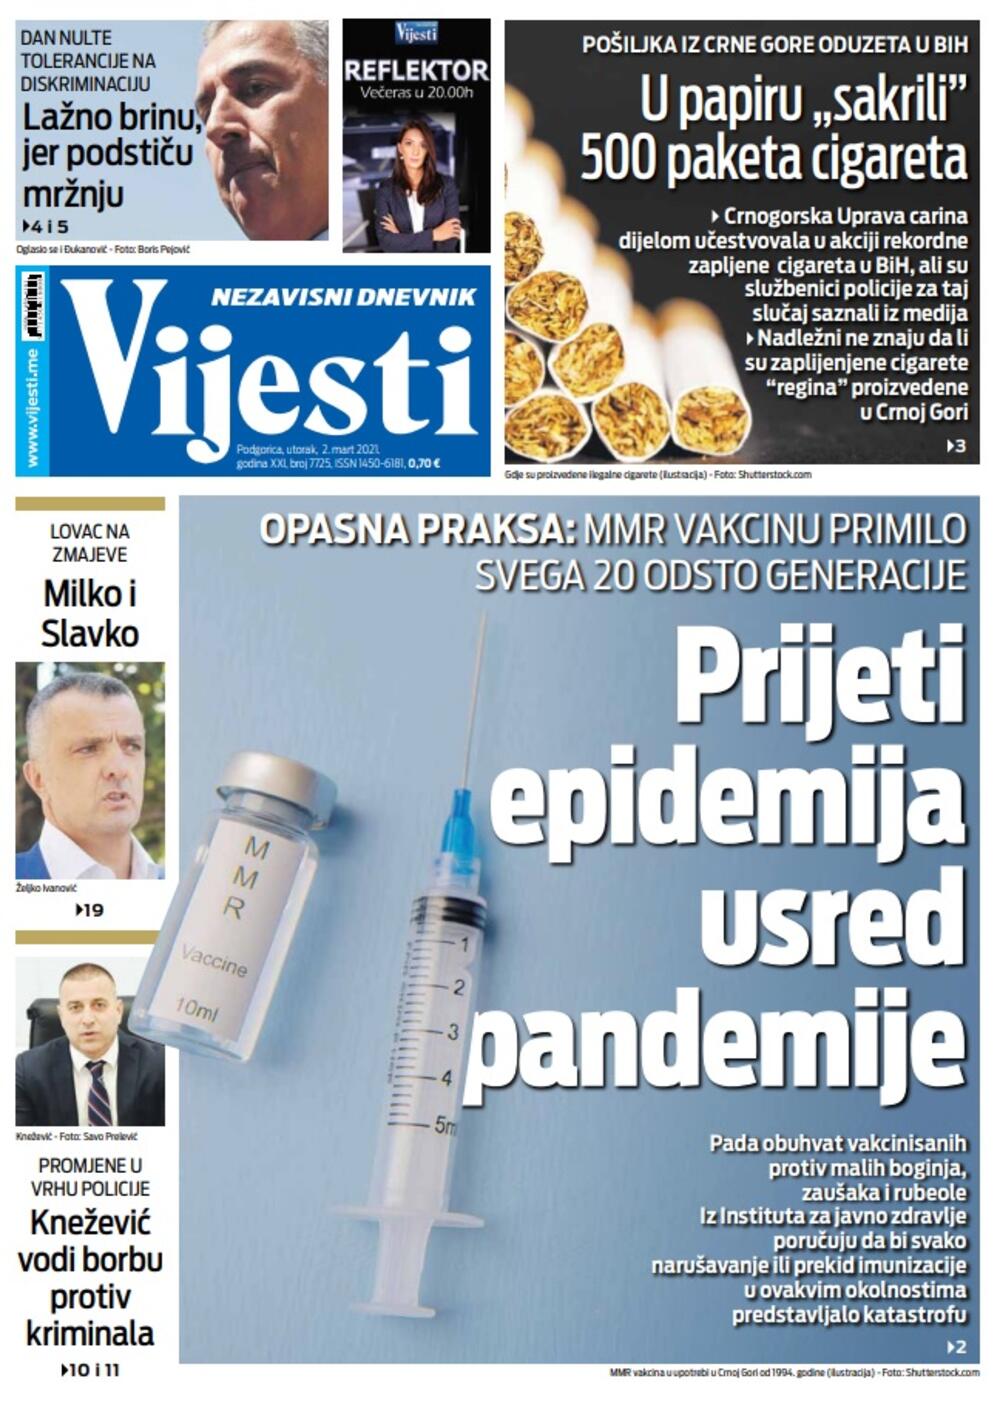 Naslovna strana "Vijesti" za utorak 2. mart 2021. godine, Foto: Vijesti